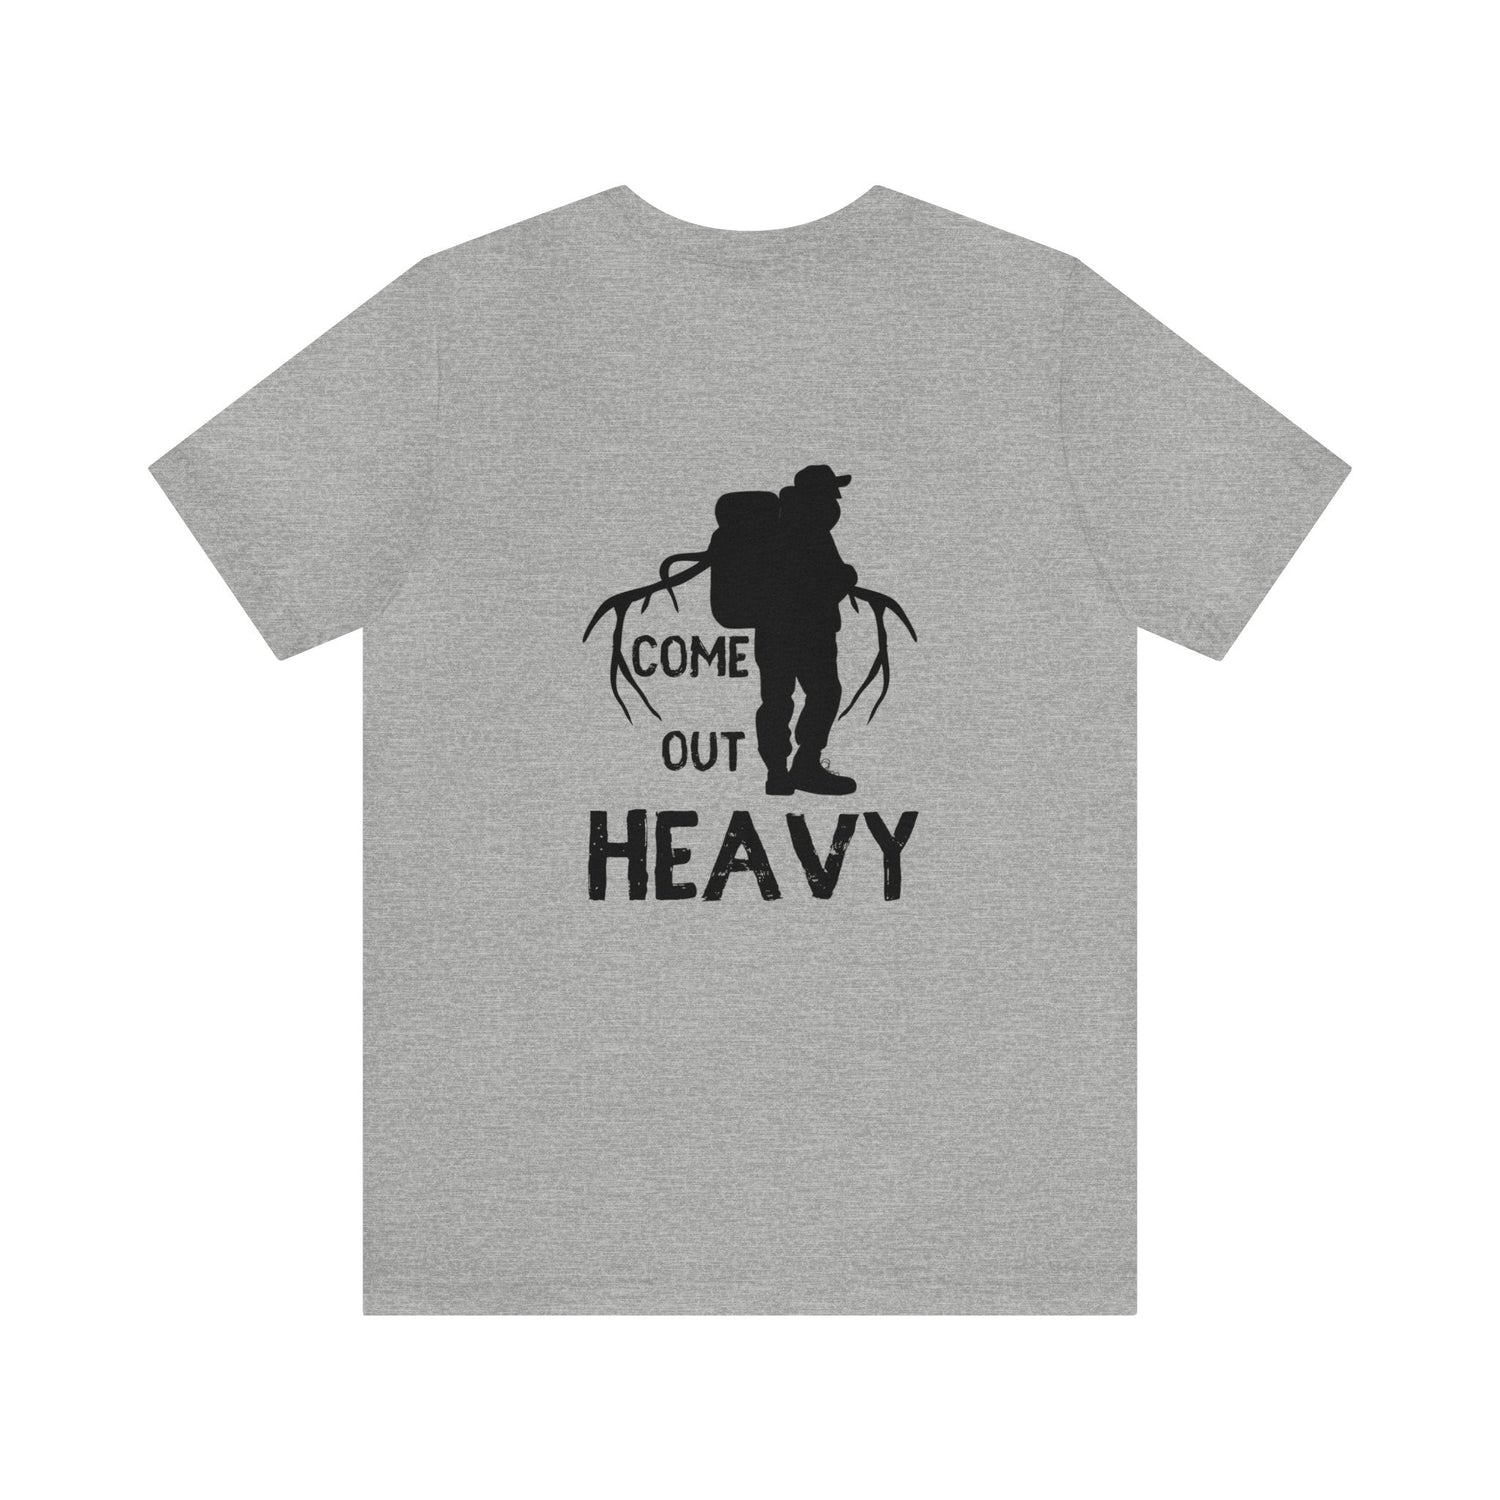 Western elk hunting t-shirt, color light grey, back design placement